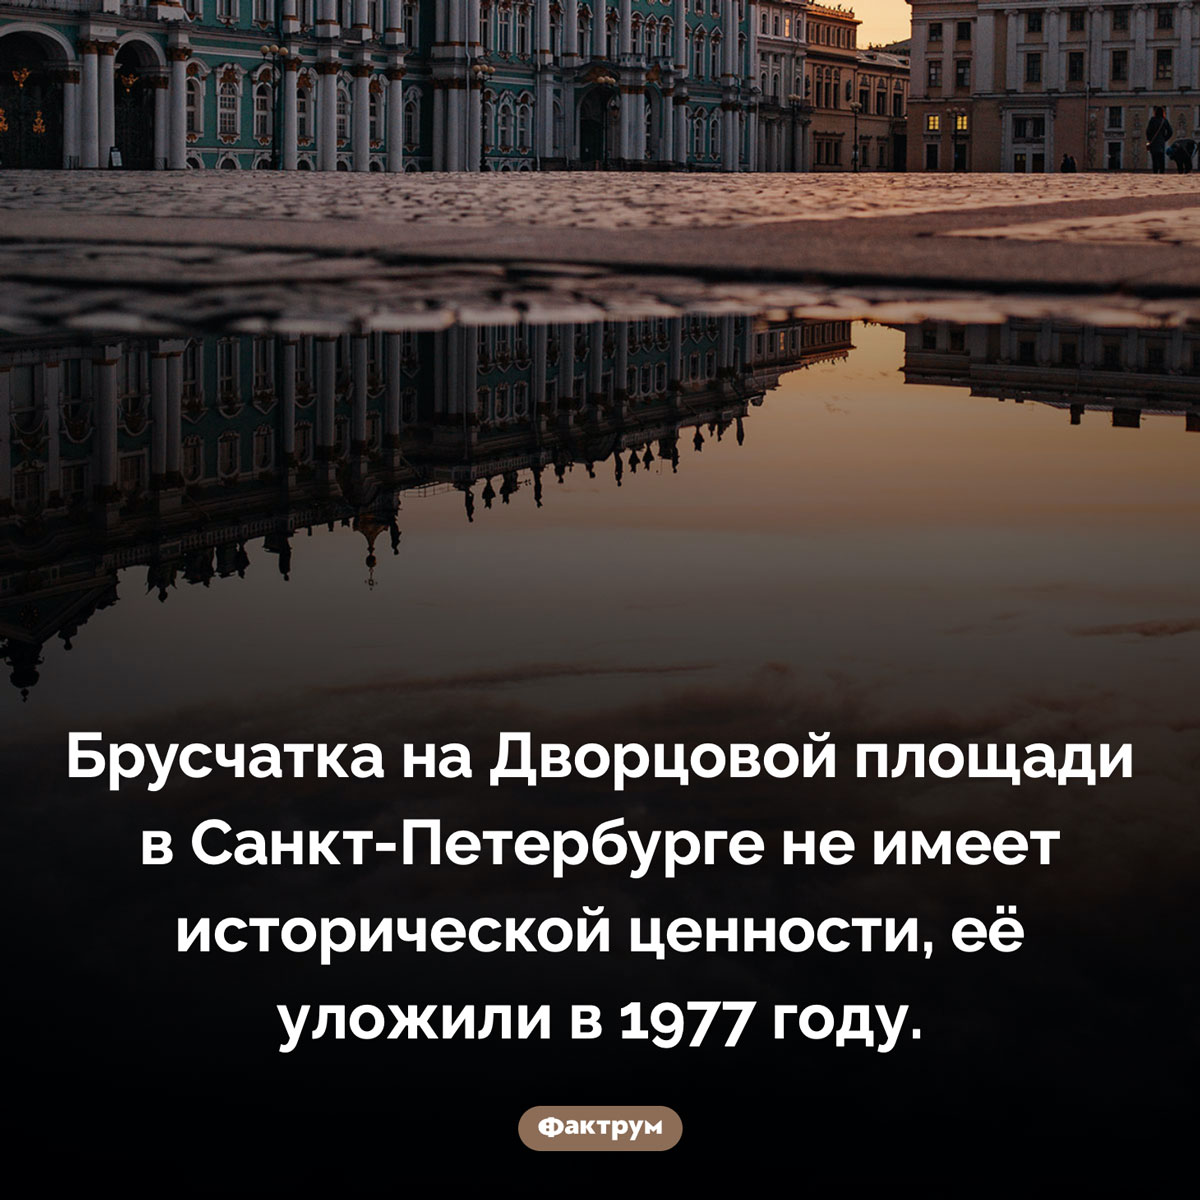 Брусчатка Дворцовой площади Санкт-Петербурга. Брусчатка на Дворцовой площади в Санкт-Петербурге не имеет исторической ценности, её уложили в 1977 году.